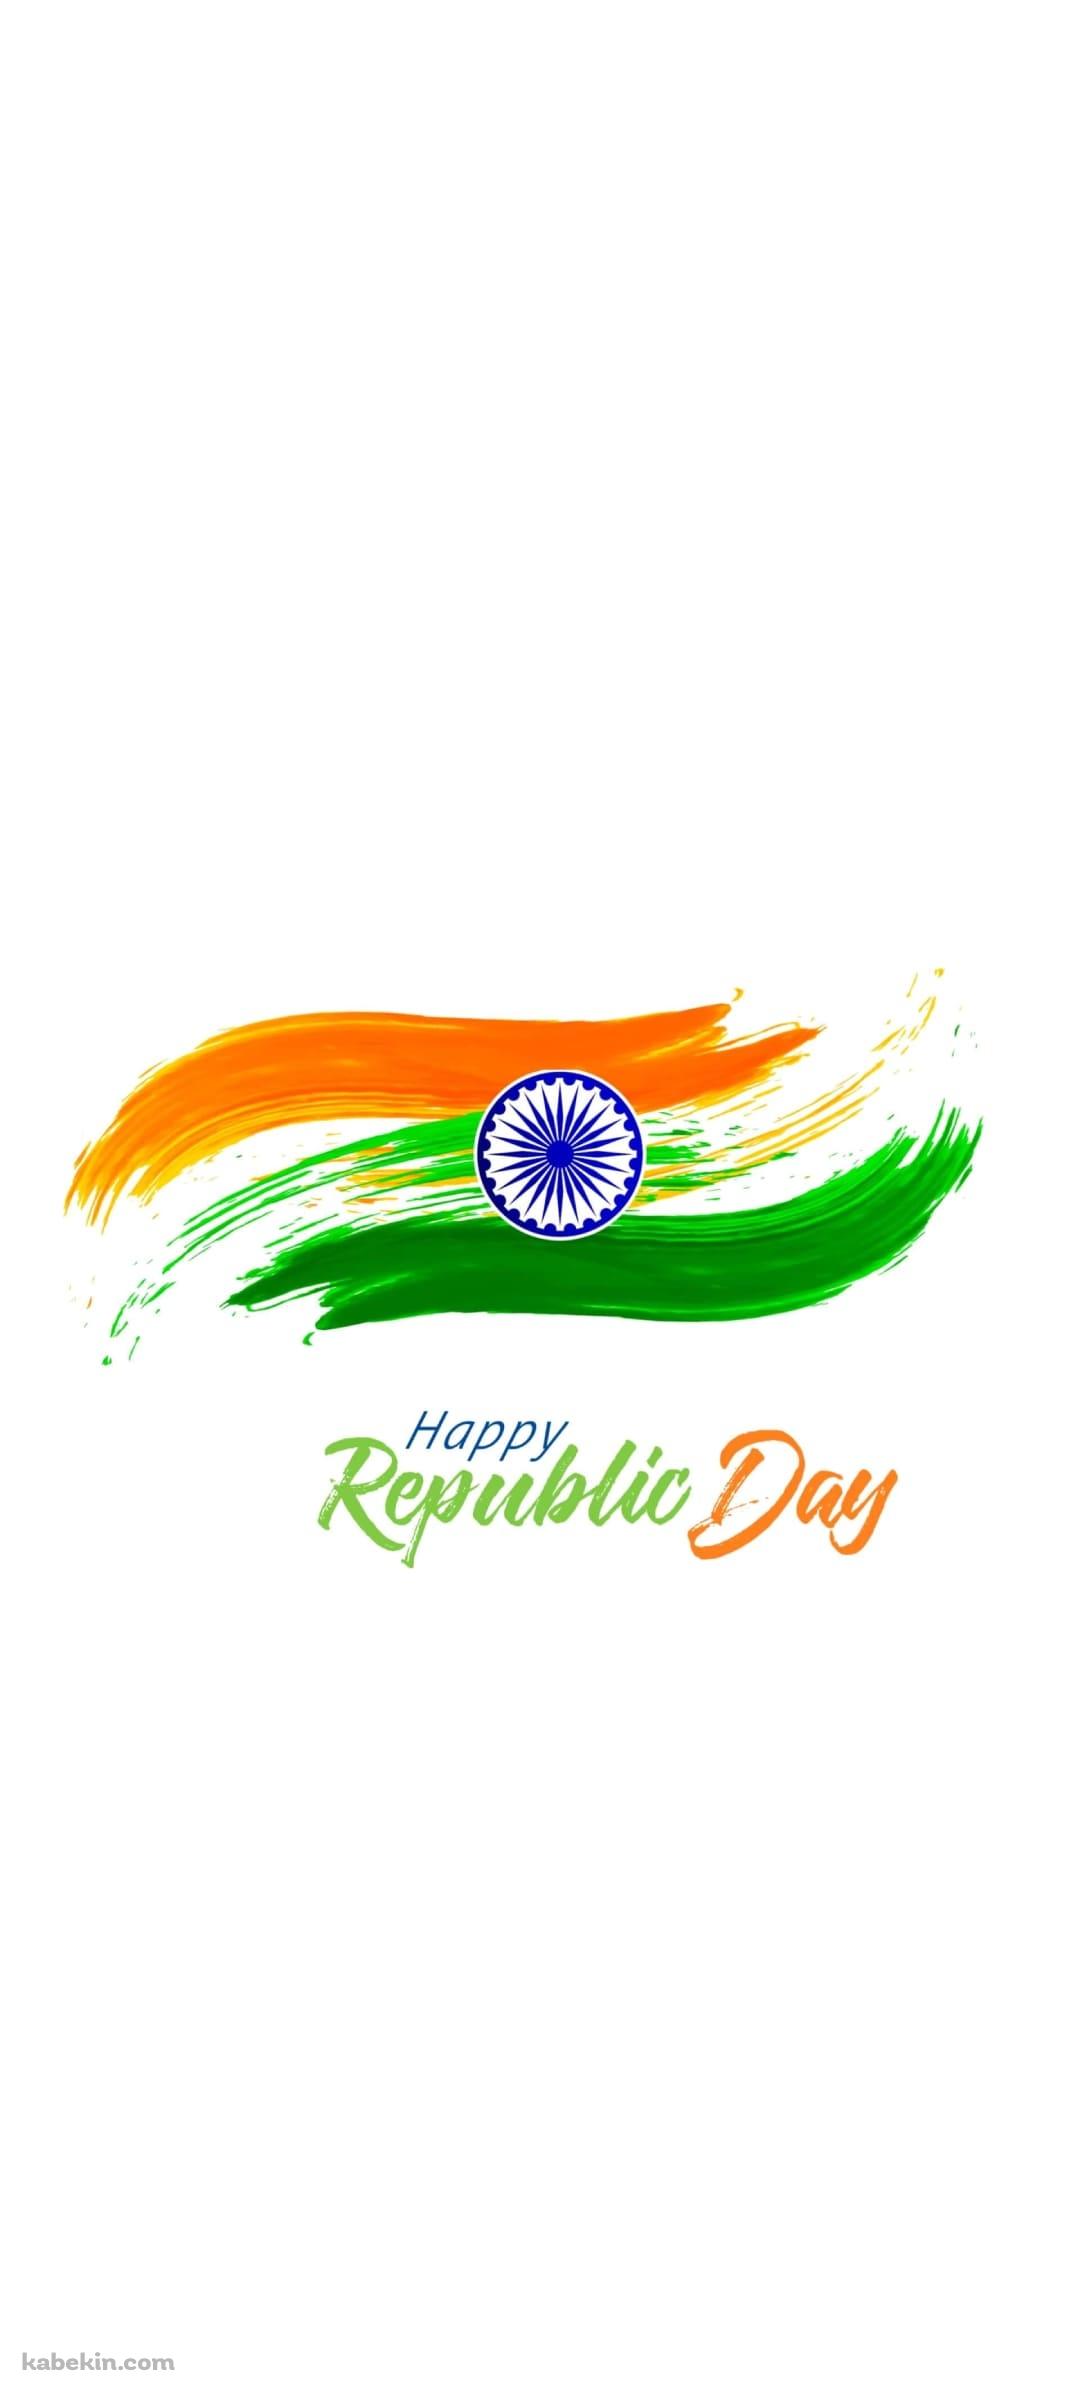 インド 共和国記念日 / India Republic Day / 1月26日のAndroidの壁紙(1080px x 2400px) スマホ用